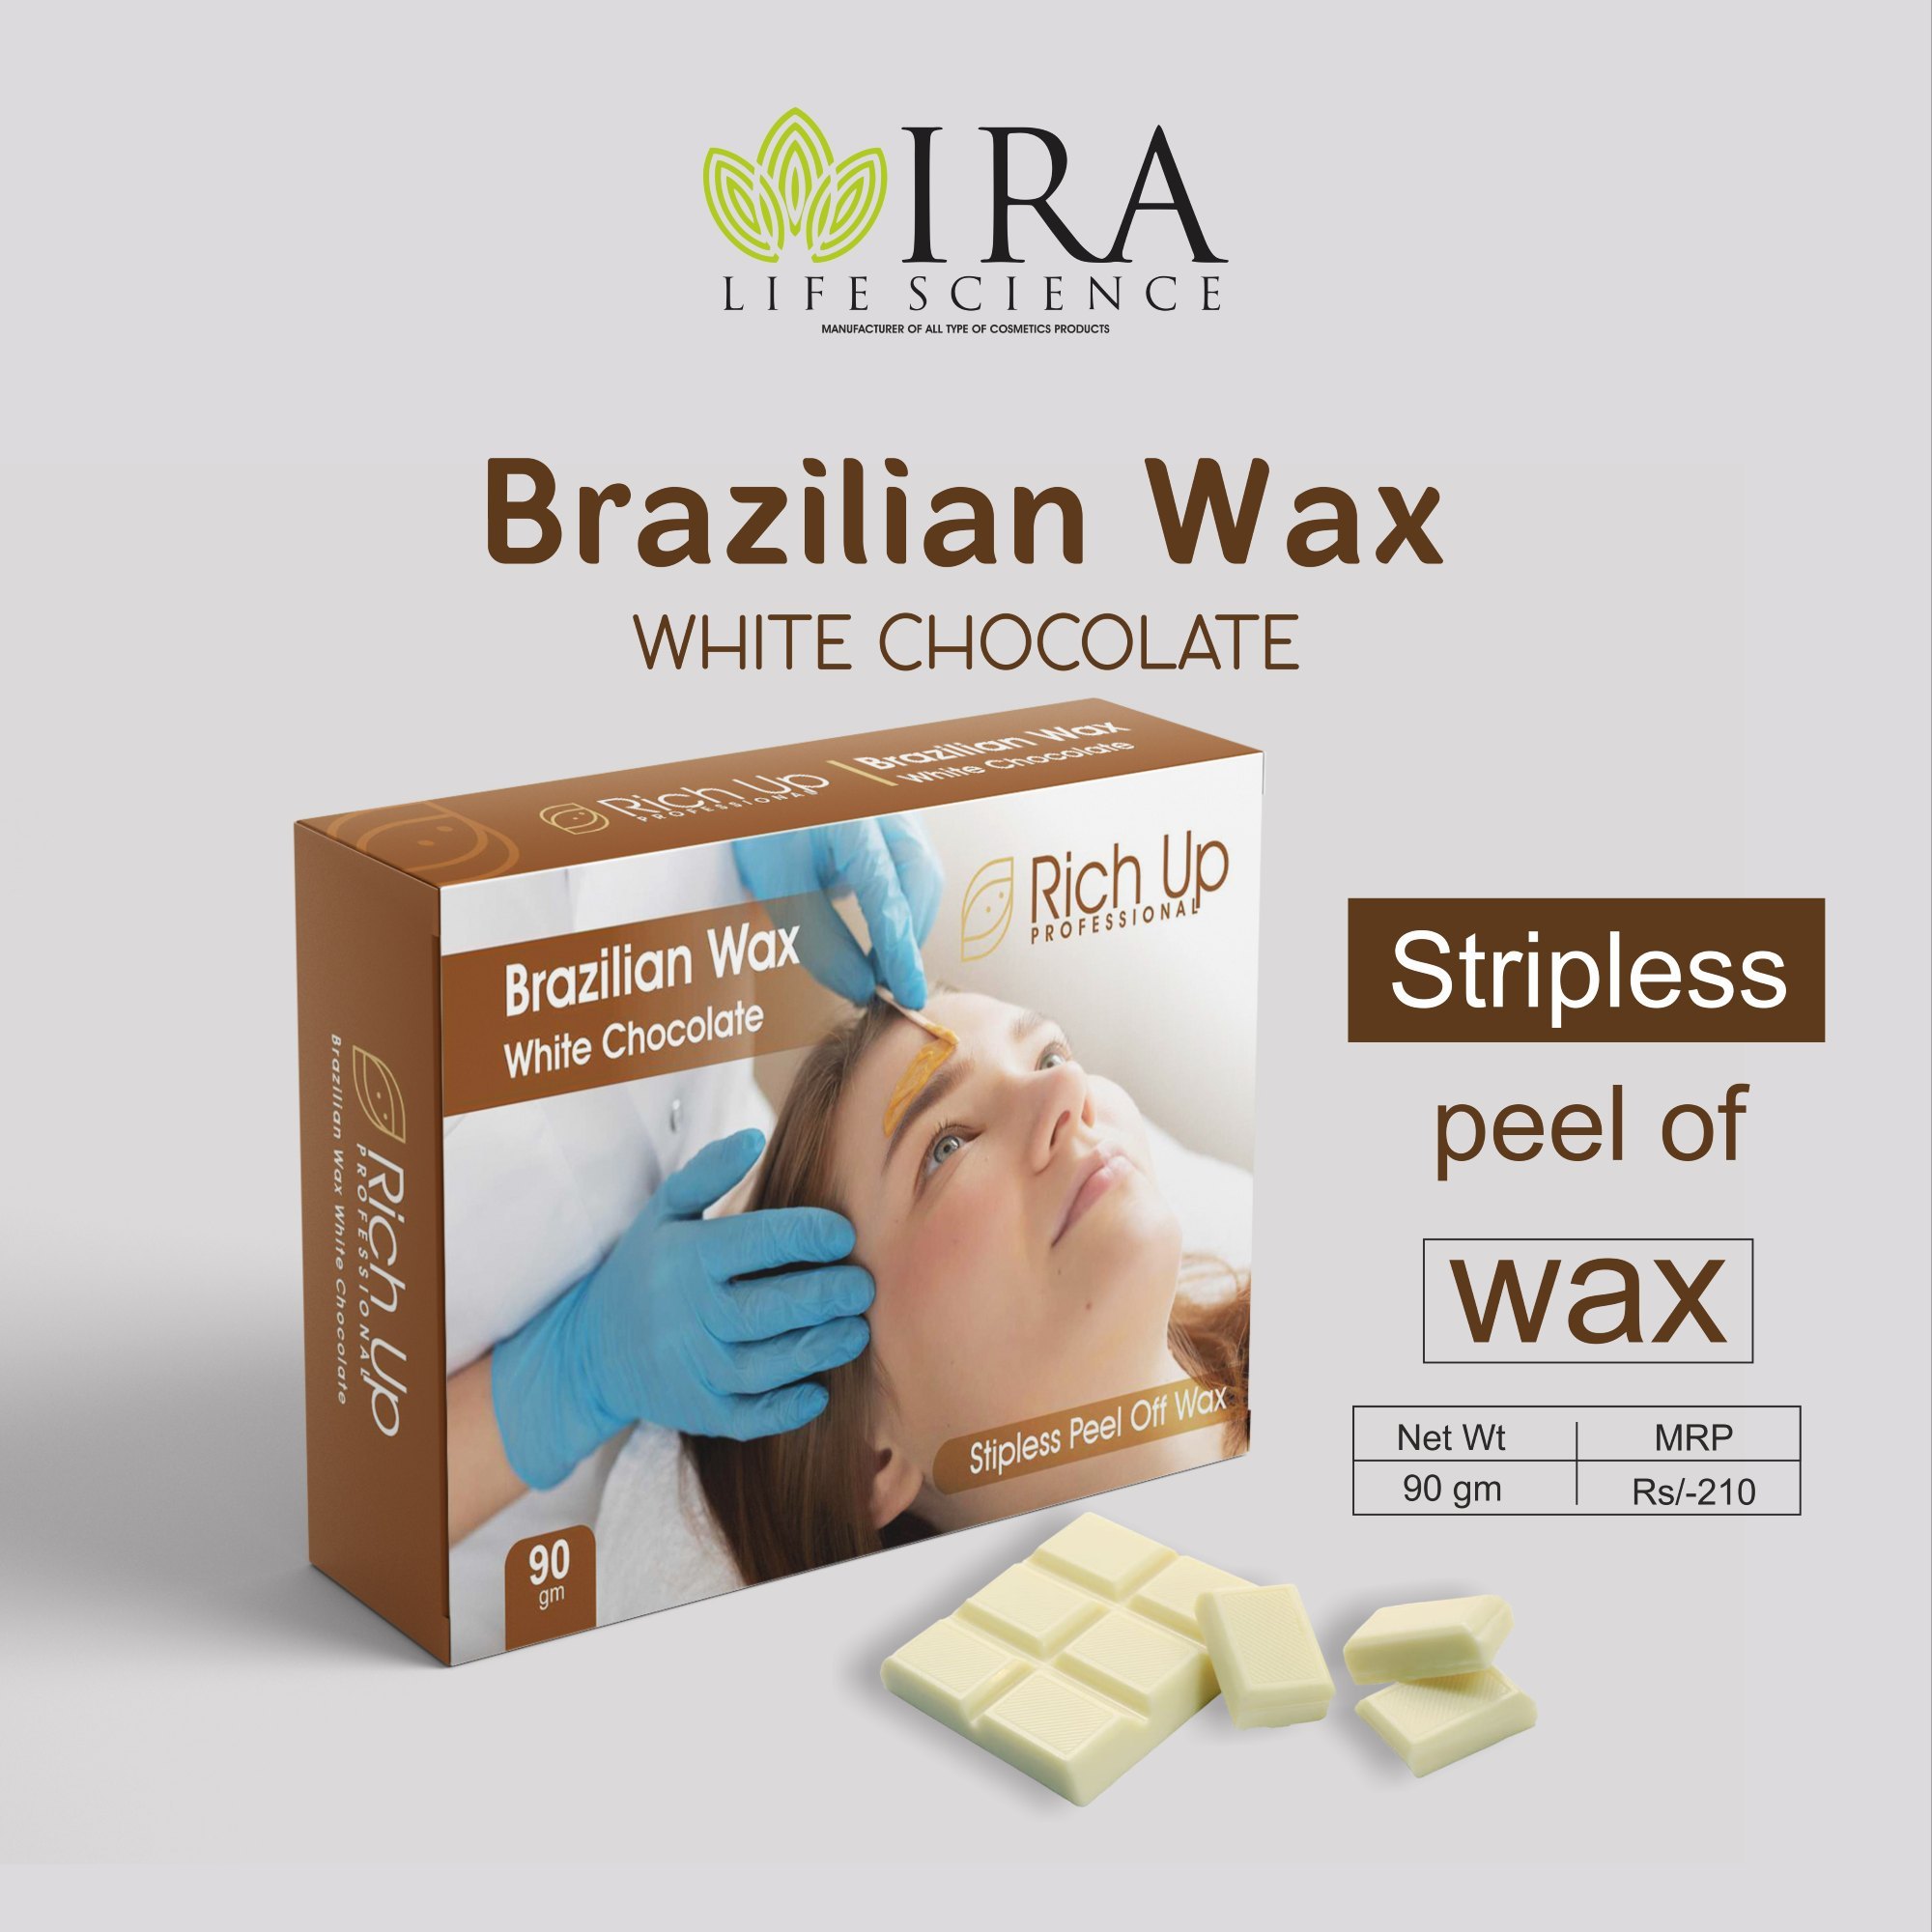 aida simon recommends Brazilian Wax Photos Gallery